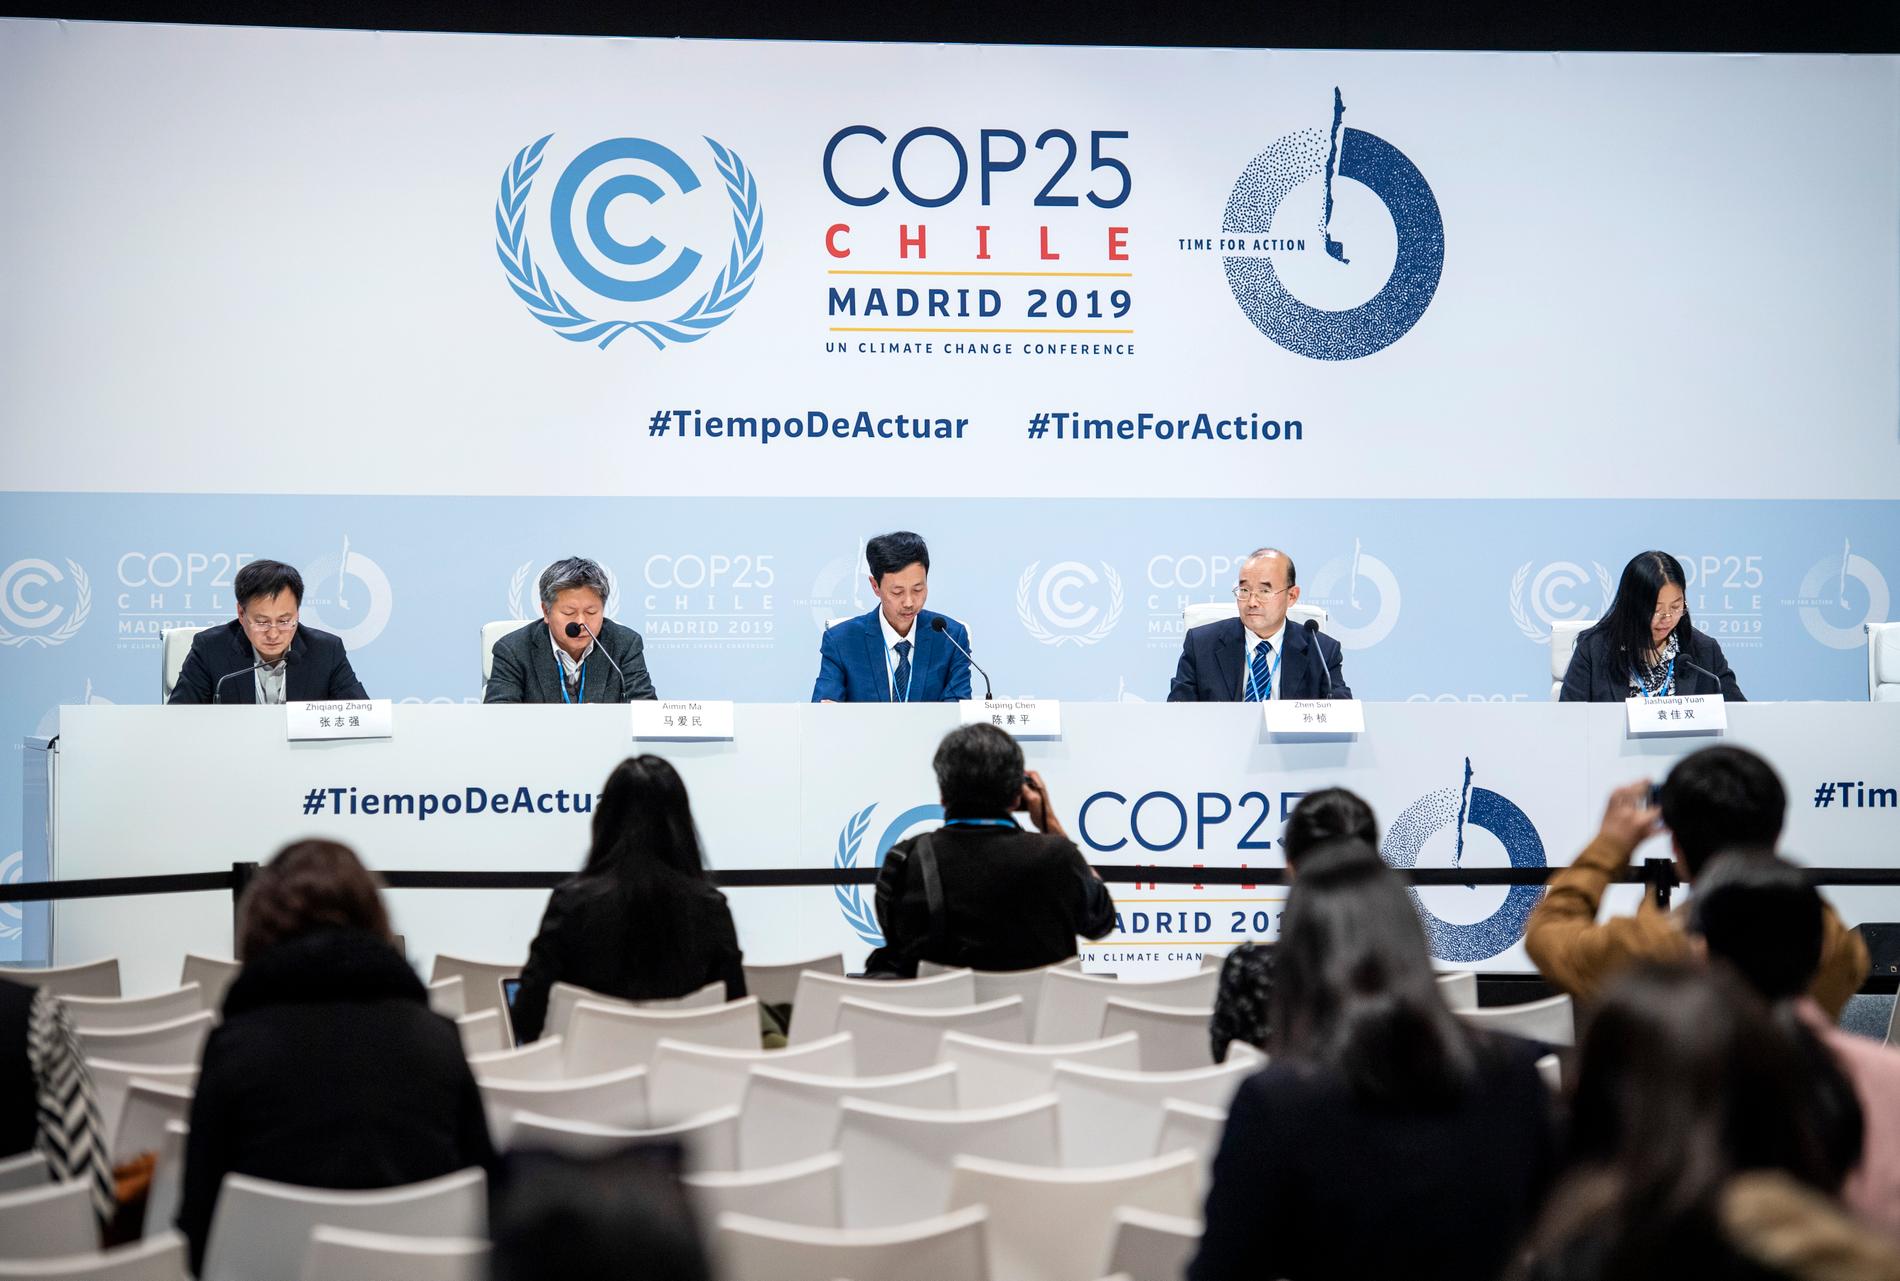 Kinas ansvar i klimatfrågan debatteras under klimattoppmötet i Madrid.